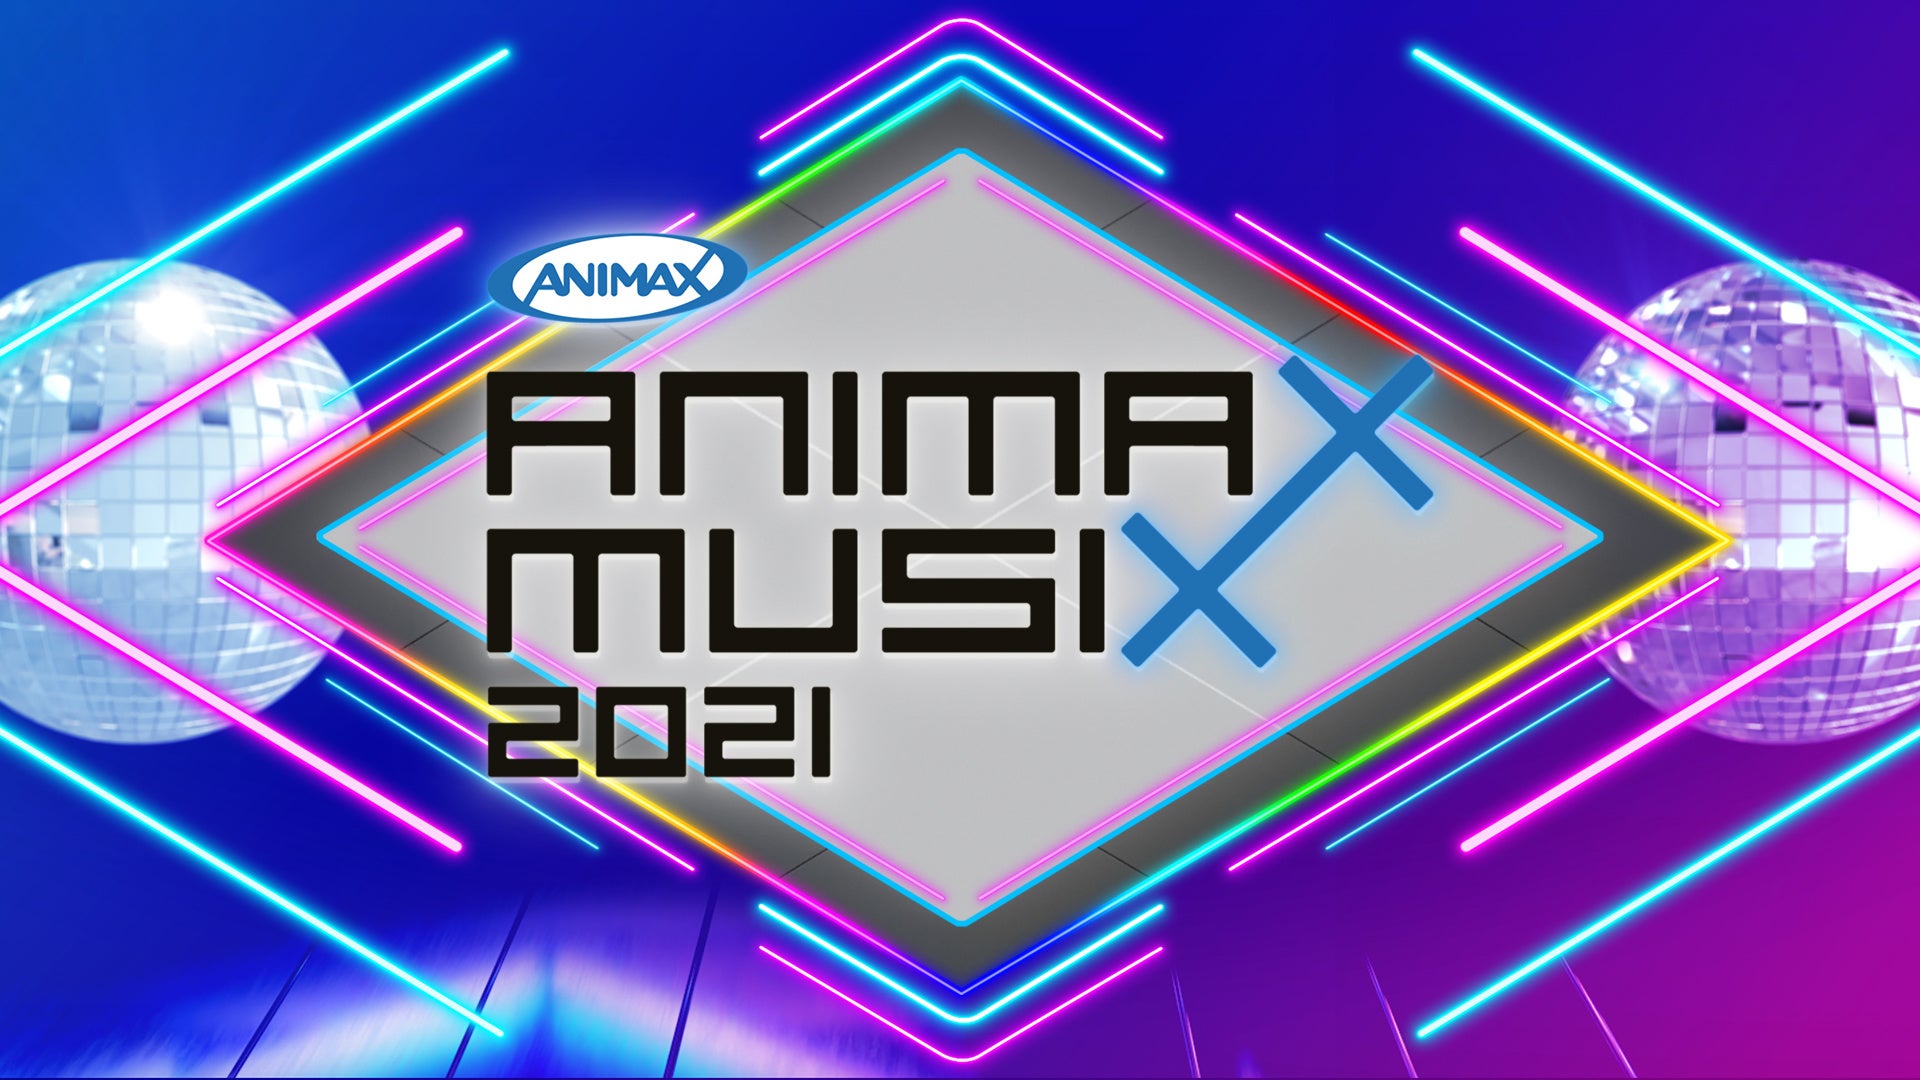 アニメミュージックの祭典「ANIMAX MUSIX 2021」のLIVEカラオケをデュアル映像で5月1日(日)より独占配信貴重な公式グッズが当たる歌唱キャンペーンも開始